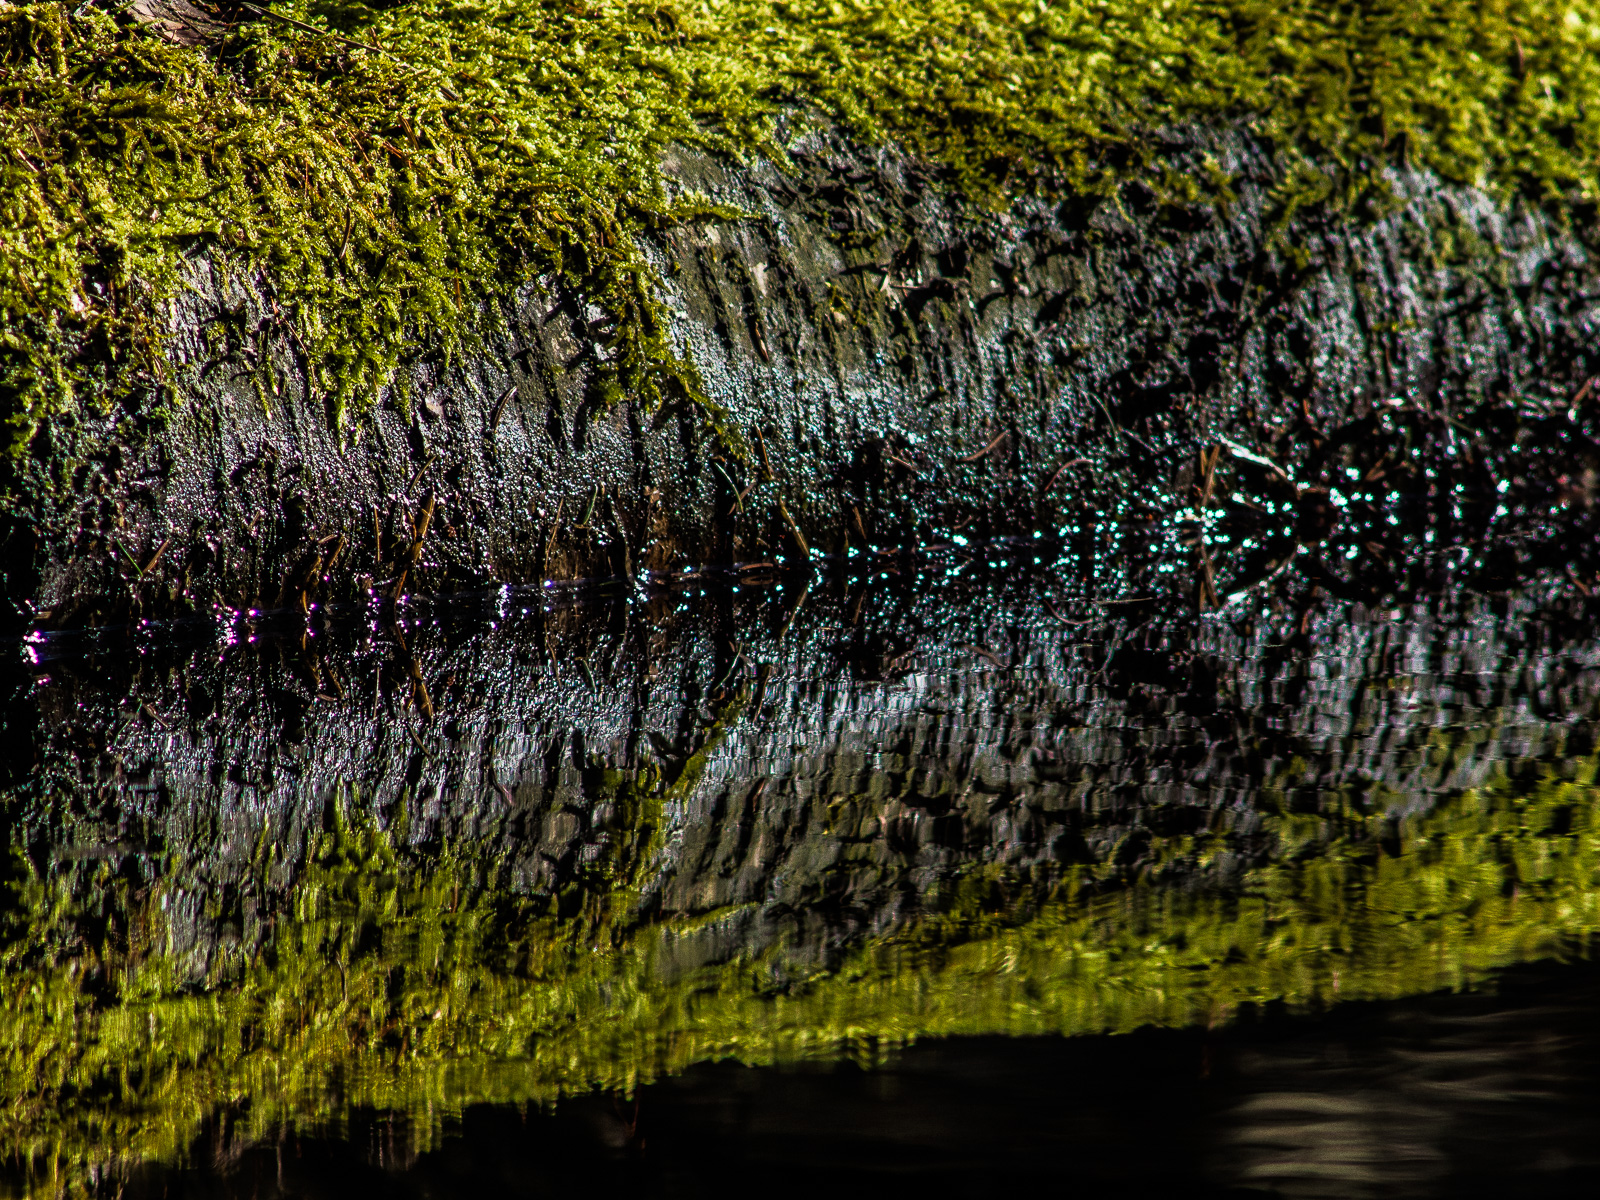 Ein moosbewachsener Stamm liegt im Wasser und spiegelt sich in der Wasseroberfläche. Das Moos leuchtet im Sonnenlicht.